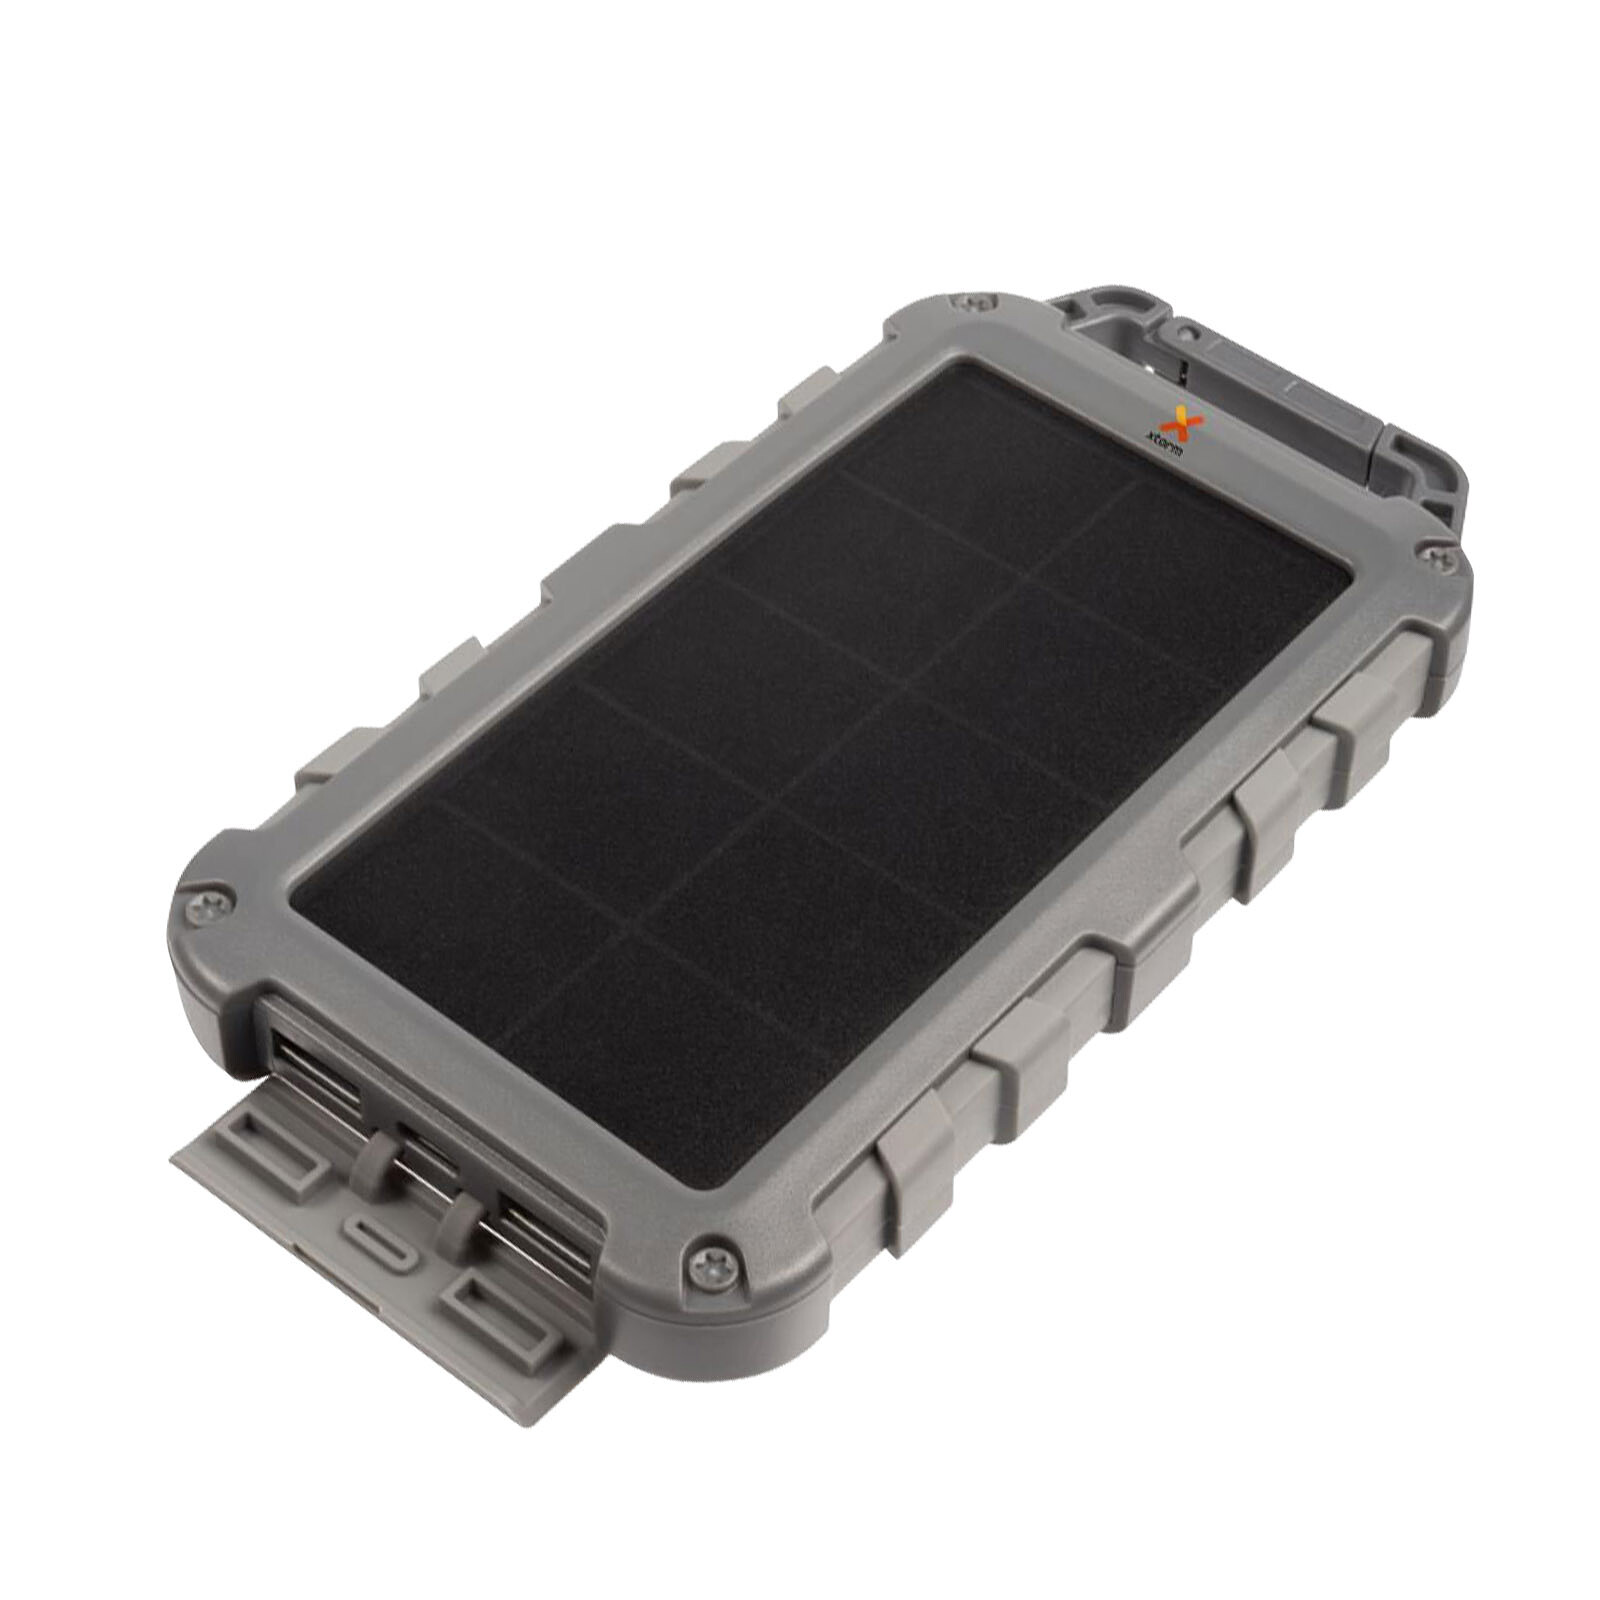 Xtorm Powerbank Solaire mah w 2x Usb Usb C Lampe Led Fuel Series Gris Batterie Externe Xtorm Sur Ldlc